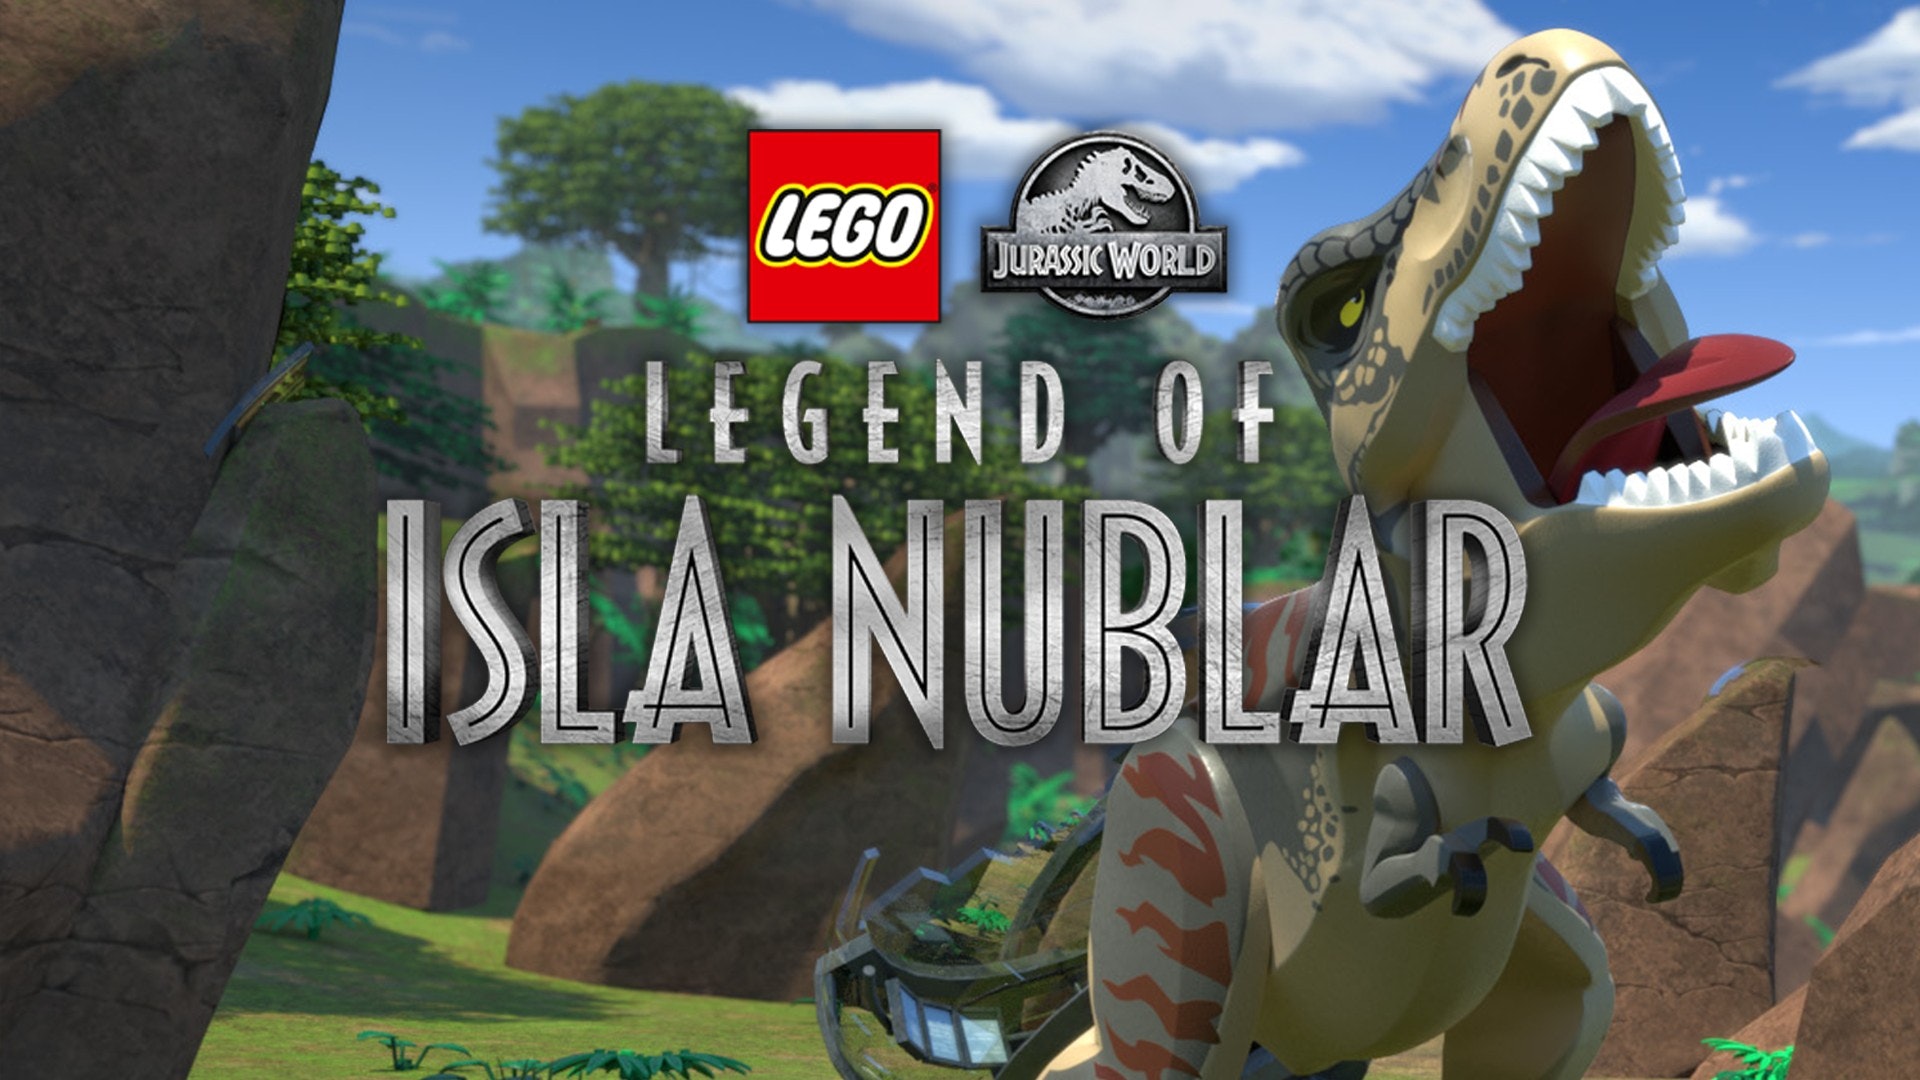 Lego Jurassic World: Legend of Isla Nublar Season 1